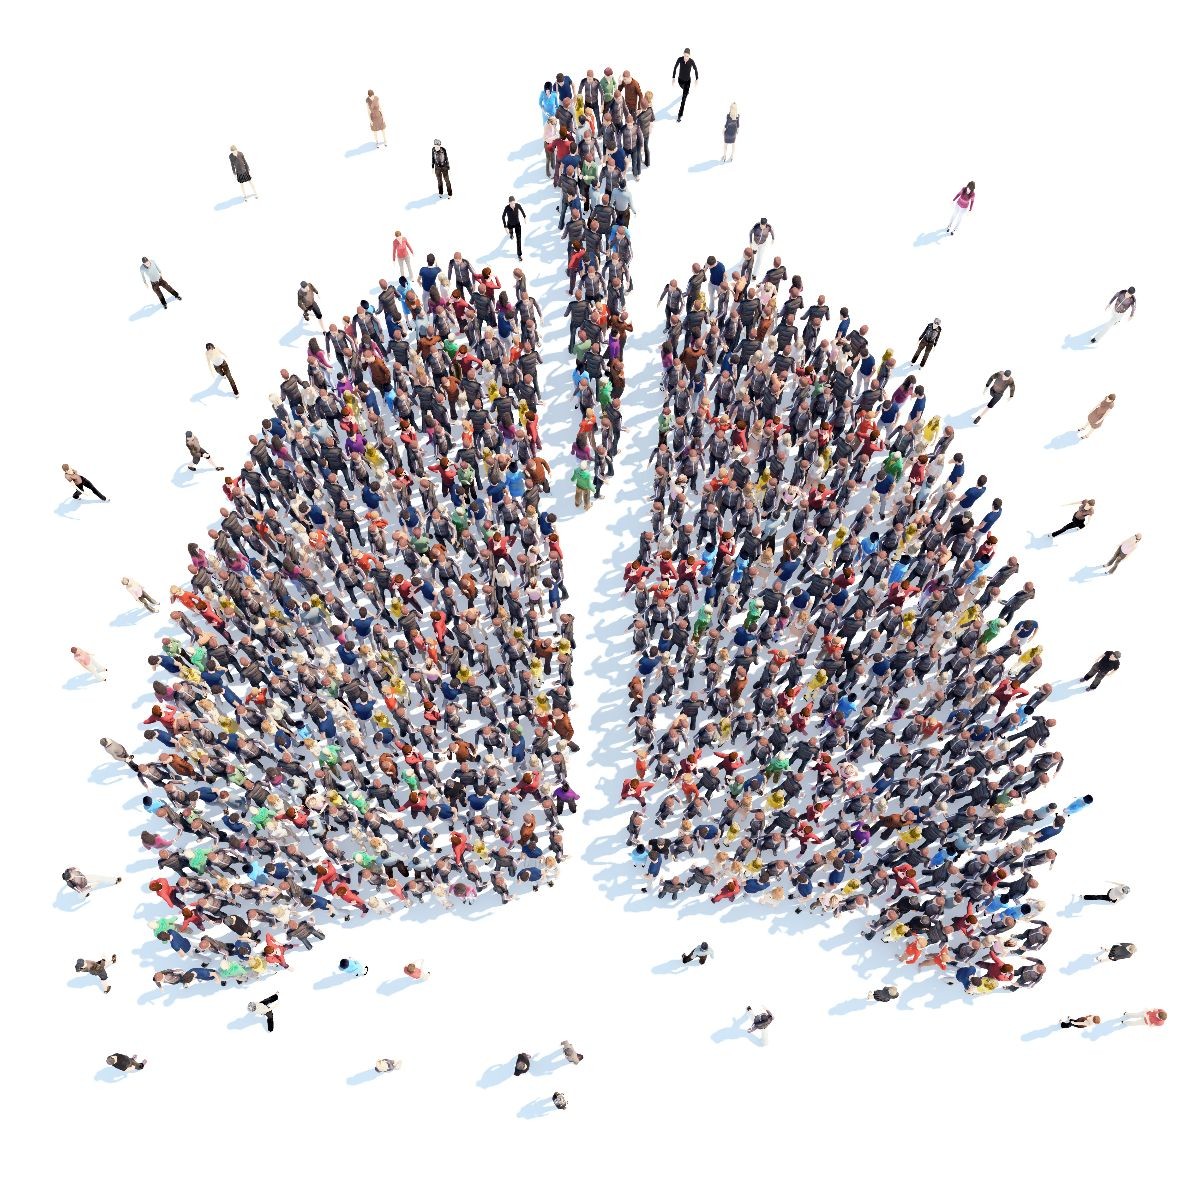 Personas en forma de un pulmón humano